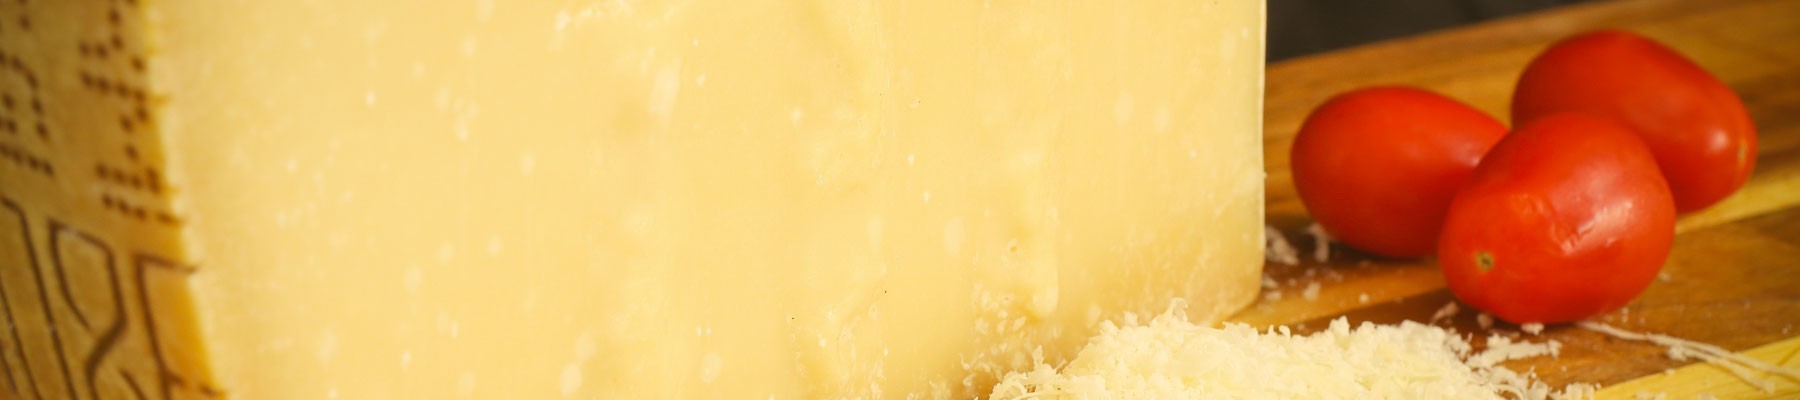 Parmigiano Reggiano di Montagna: Online Kaufen der Parmesan Käse aus den Bergen